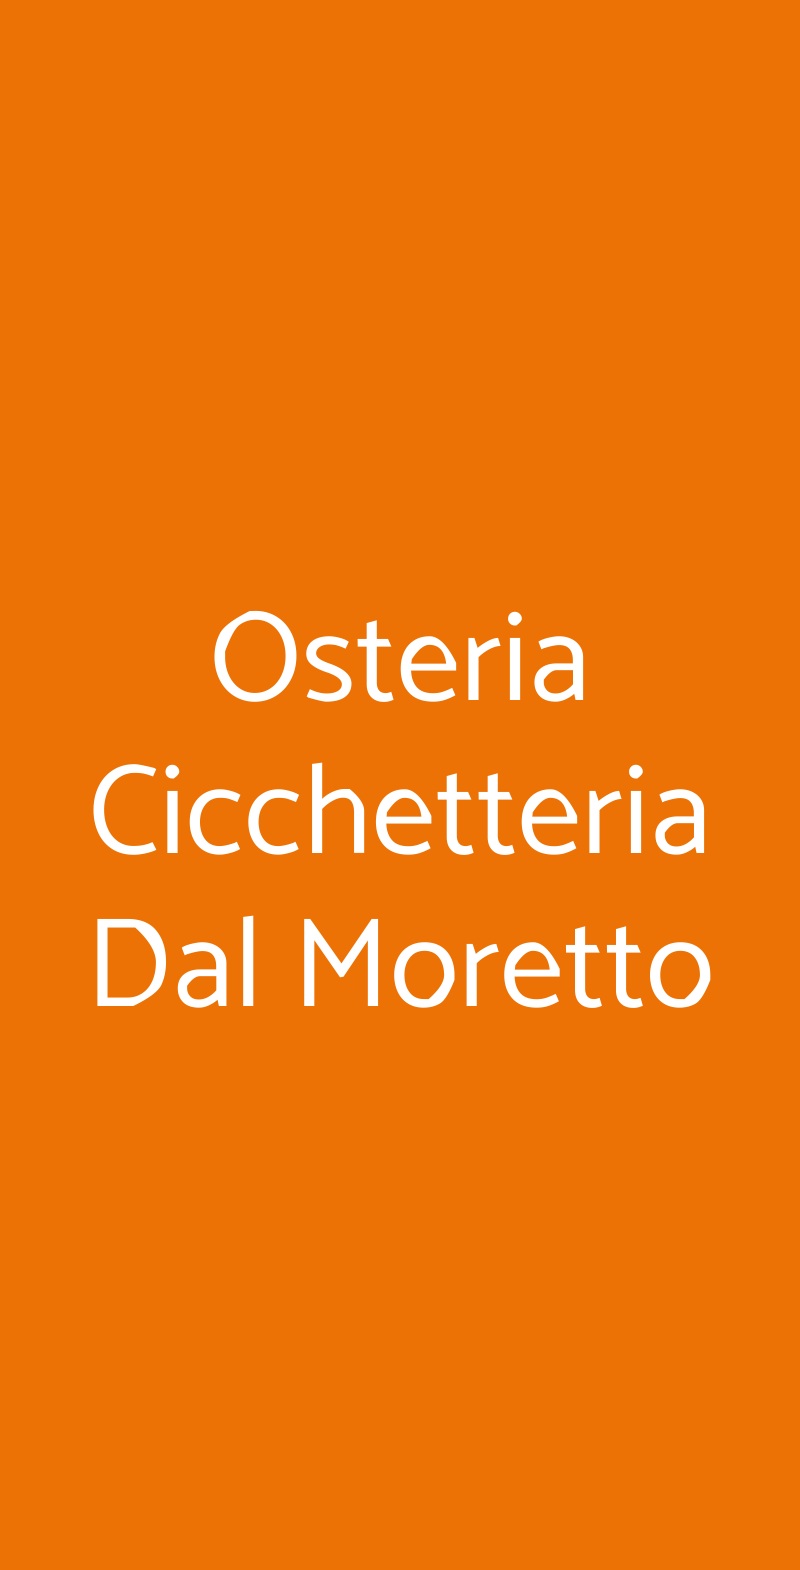 Osteria Cicchetteria Dal Moretto Noale menù 1 pagina